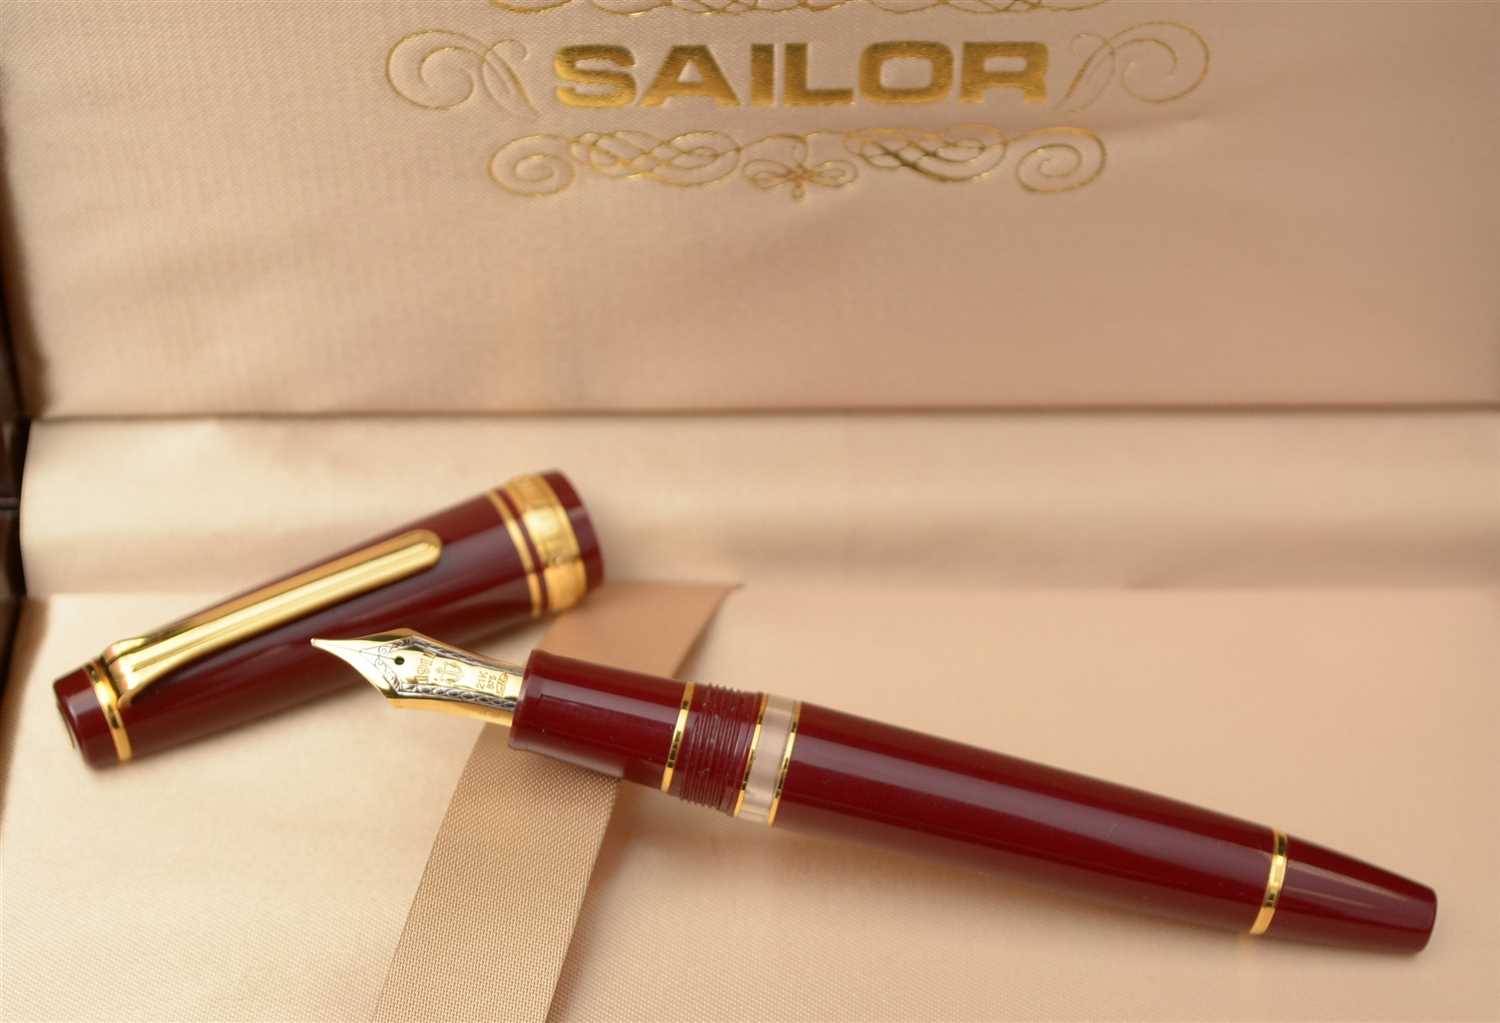 Lot 1478 - Sailor fountain pen